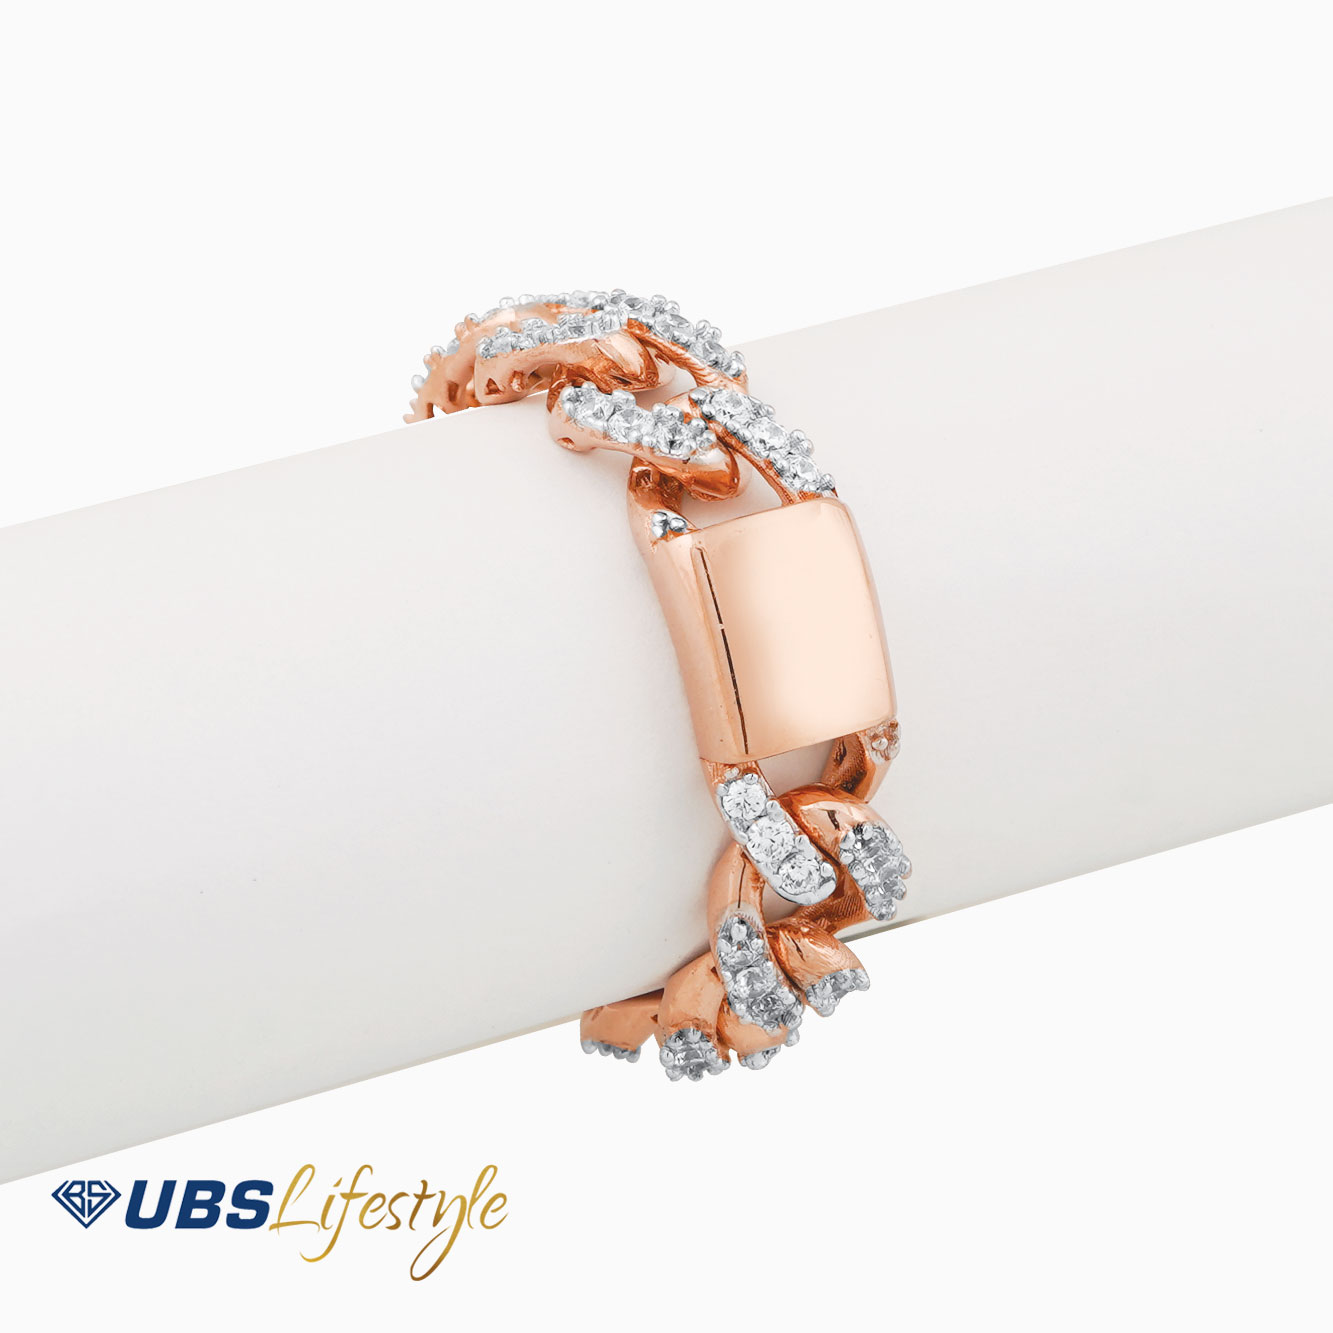 UBS Cincin Emas Fashion - Cdc0196R - 17K